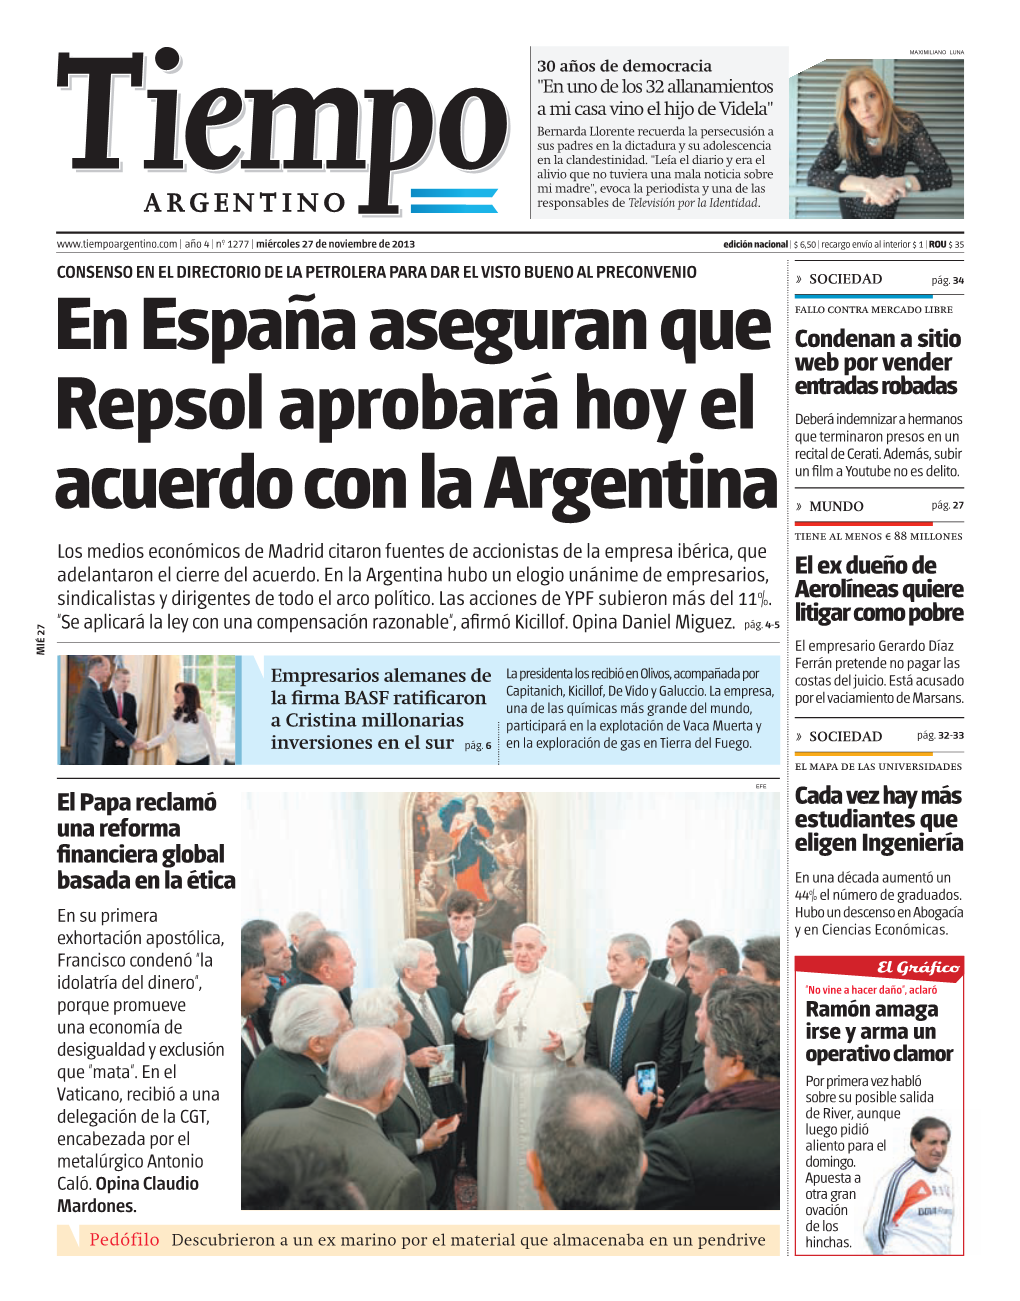 En España Aseguran Que Repsol Aprobará Hoy El Acuerdo Con La Argentina